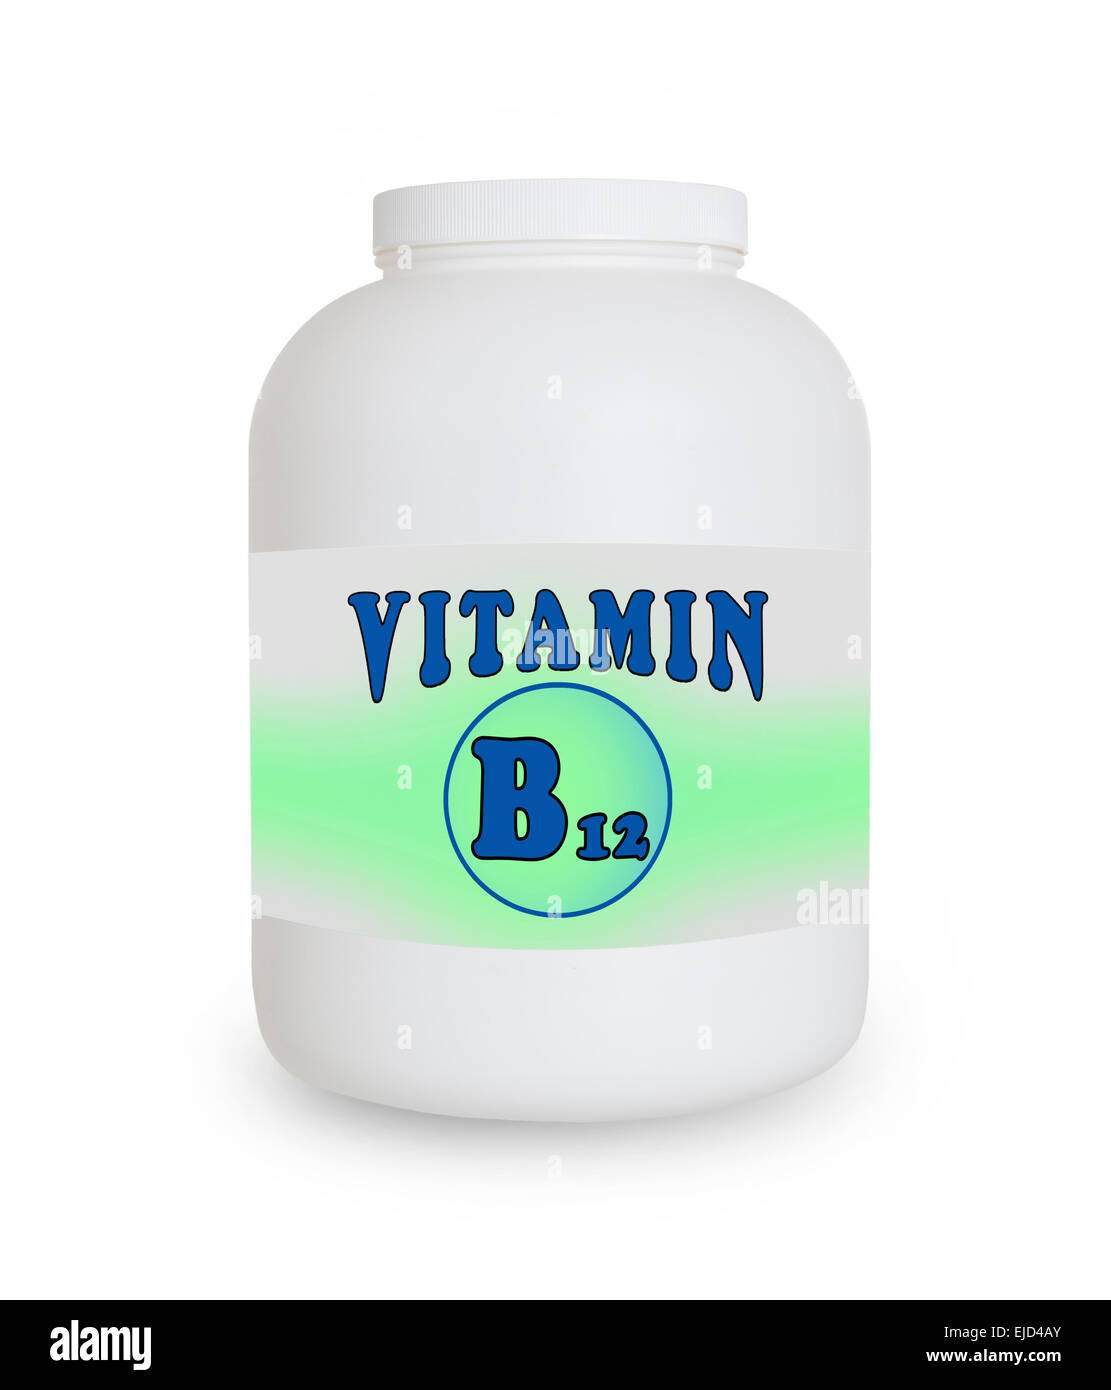 La vitamine B12, conteneur isolé sur fond blanc Banque D'Images